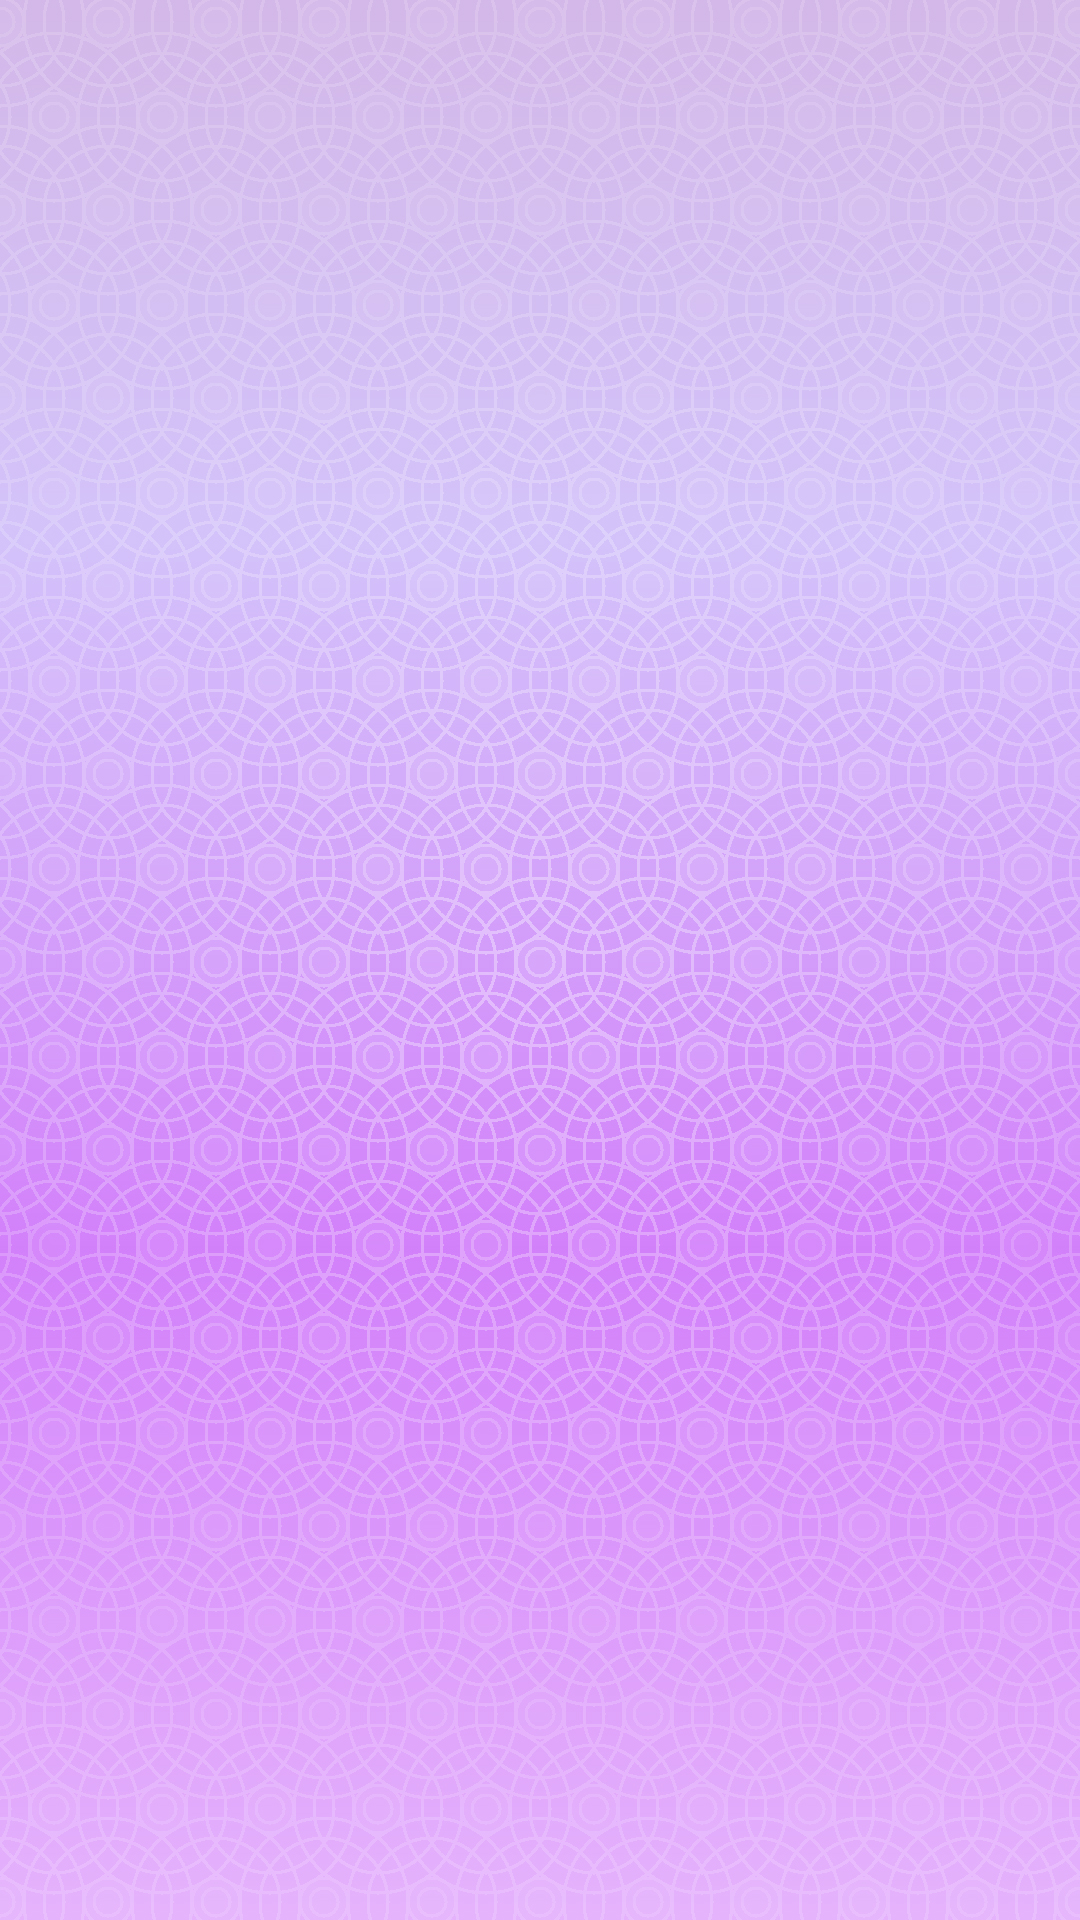 ディズニー画像ランド 心に強く訴えるiphone 壁紙 紫